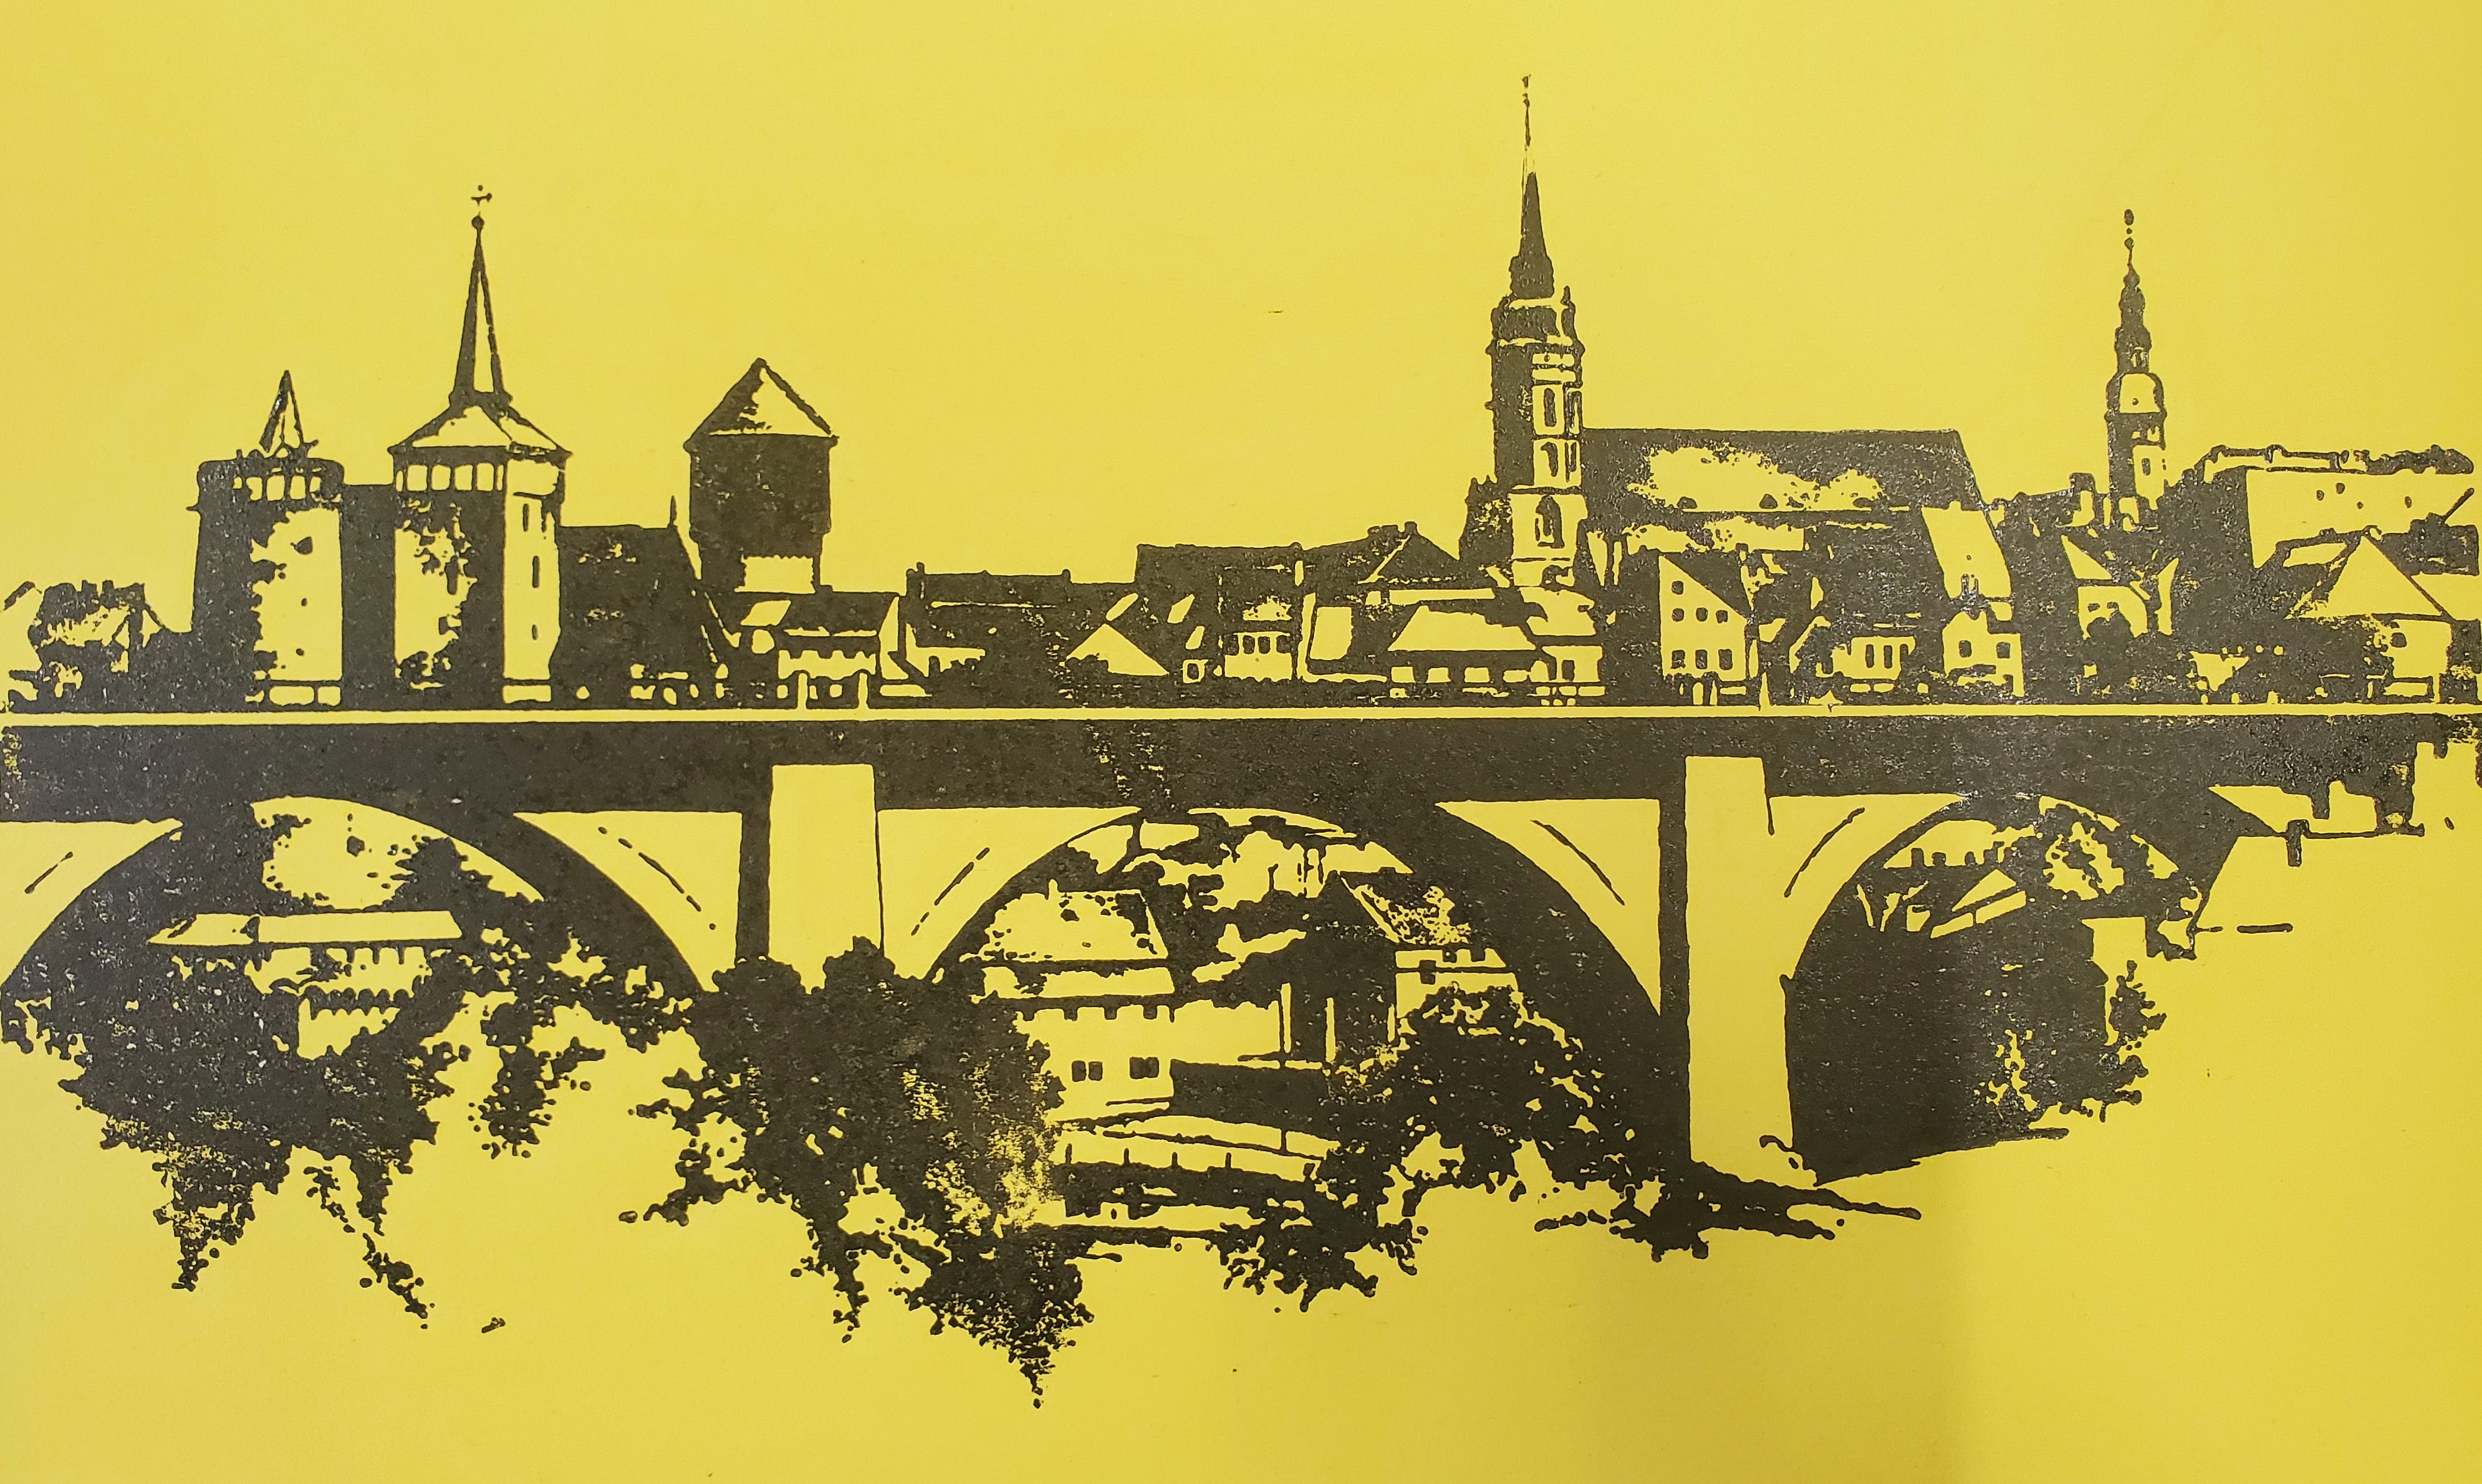 Einfarbiger schwarzer Druck auf gelbem Material, auf dem eine Ansicht der Bautzener Altstadt aus Richtung der Friedensbrücke erkennbar ist